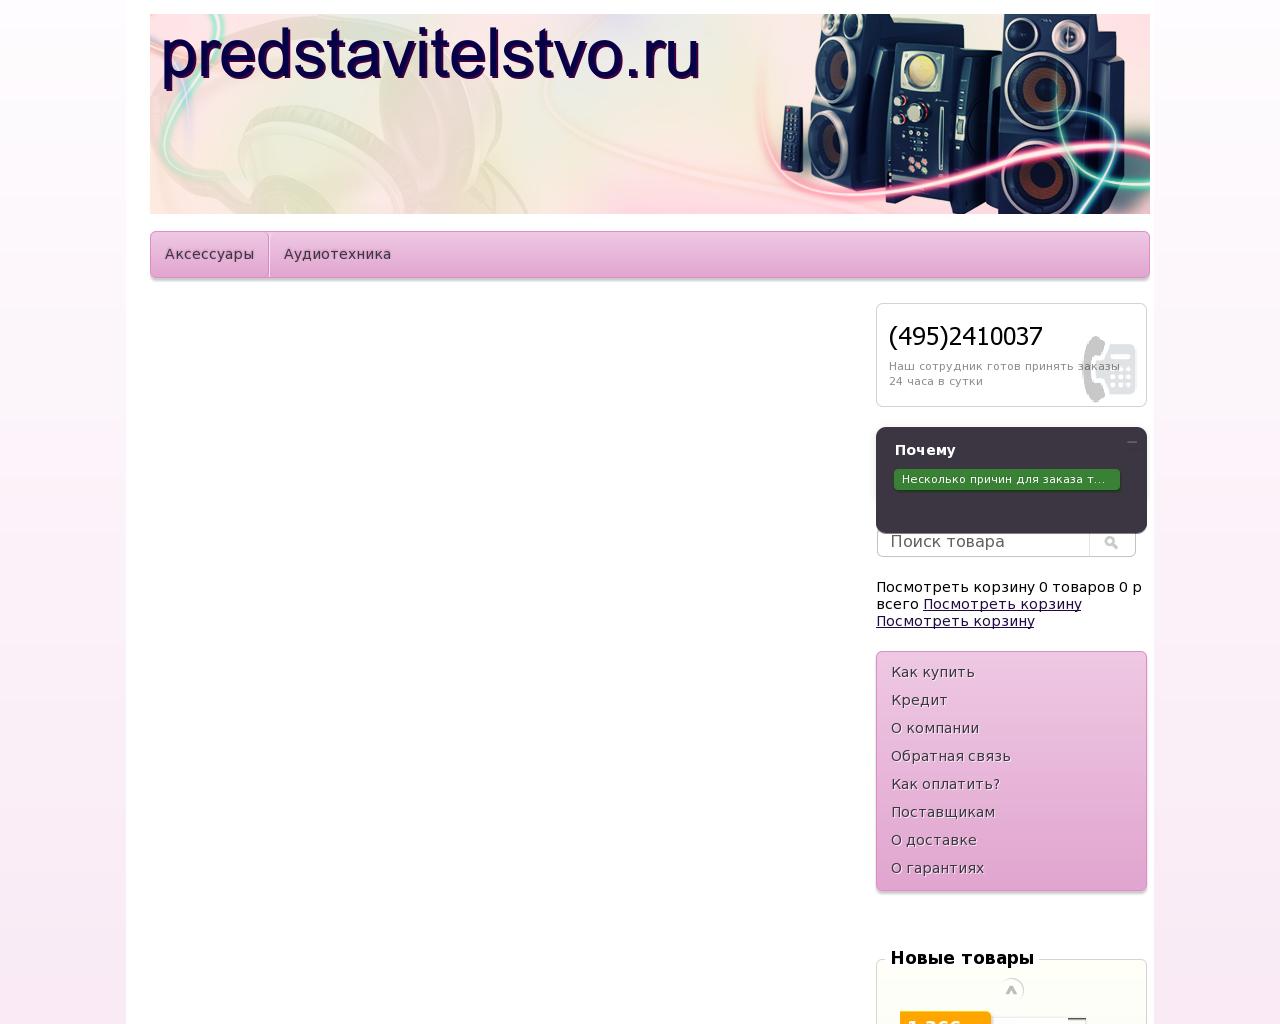 Изображение сайта predstavitelstvo.ru в разрешении 1280x1024